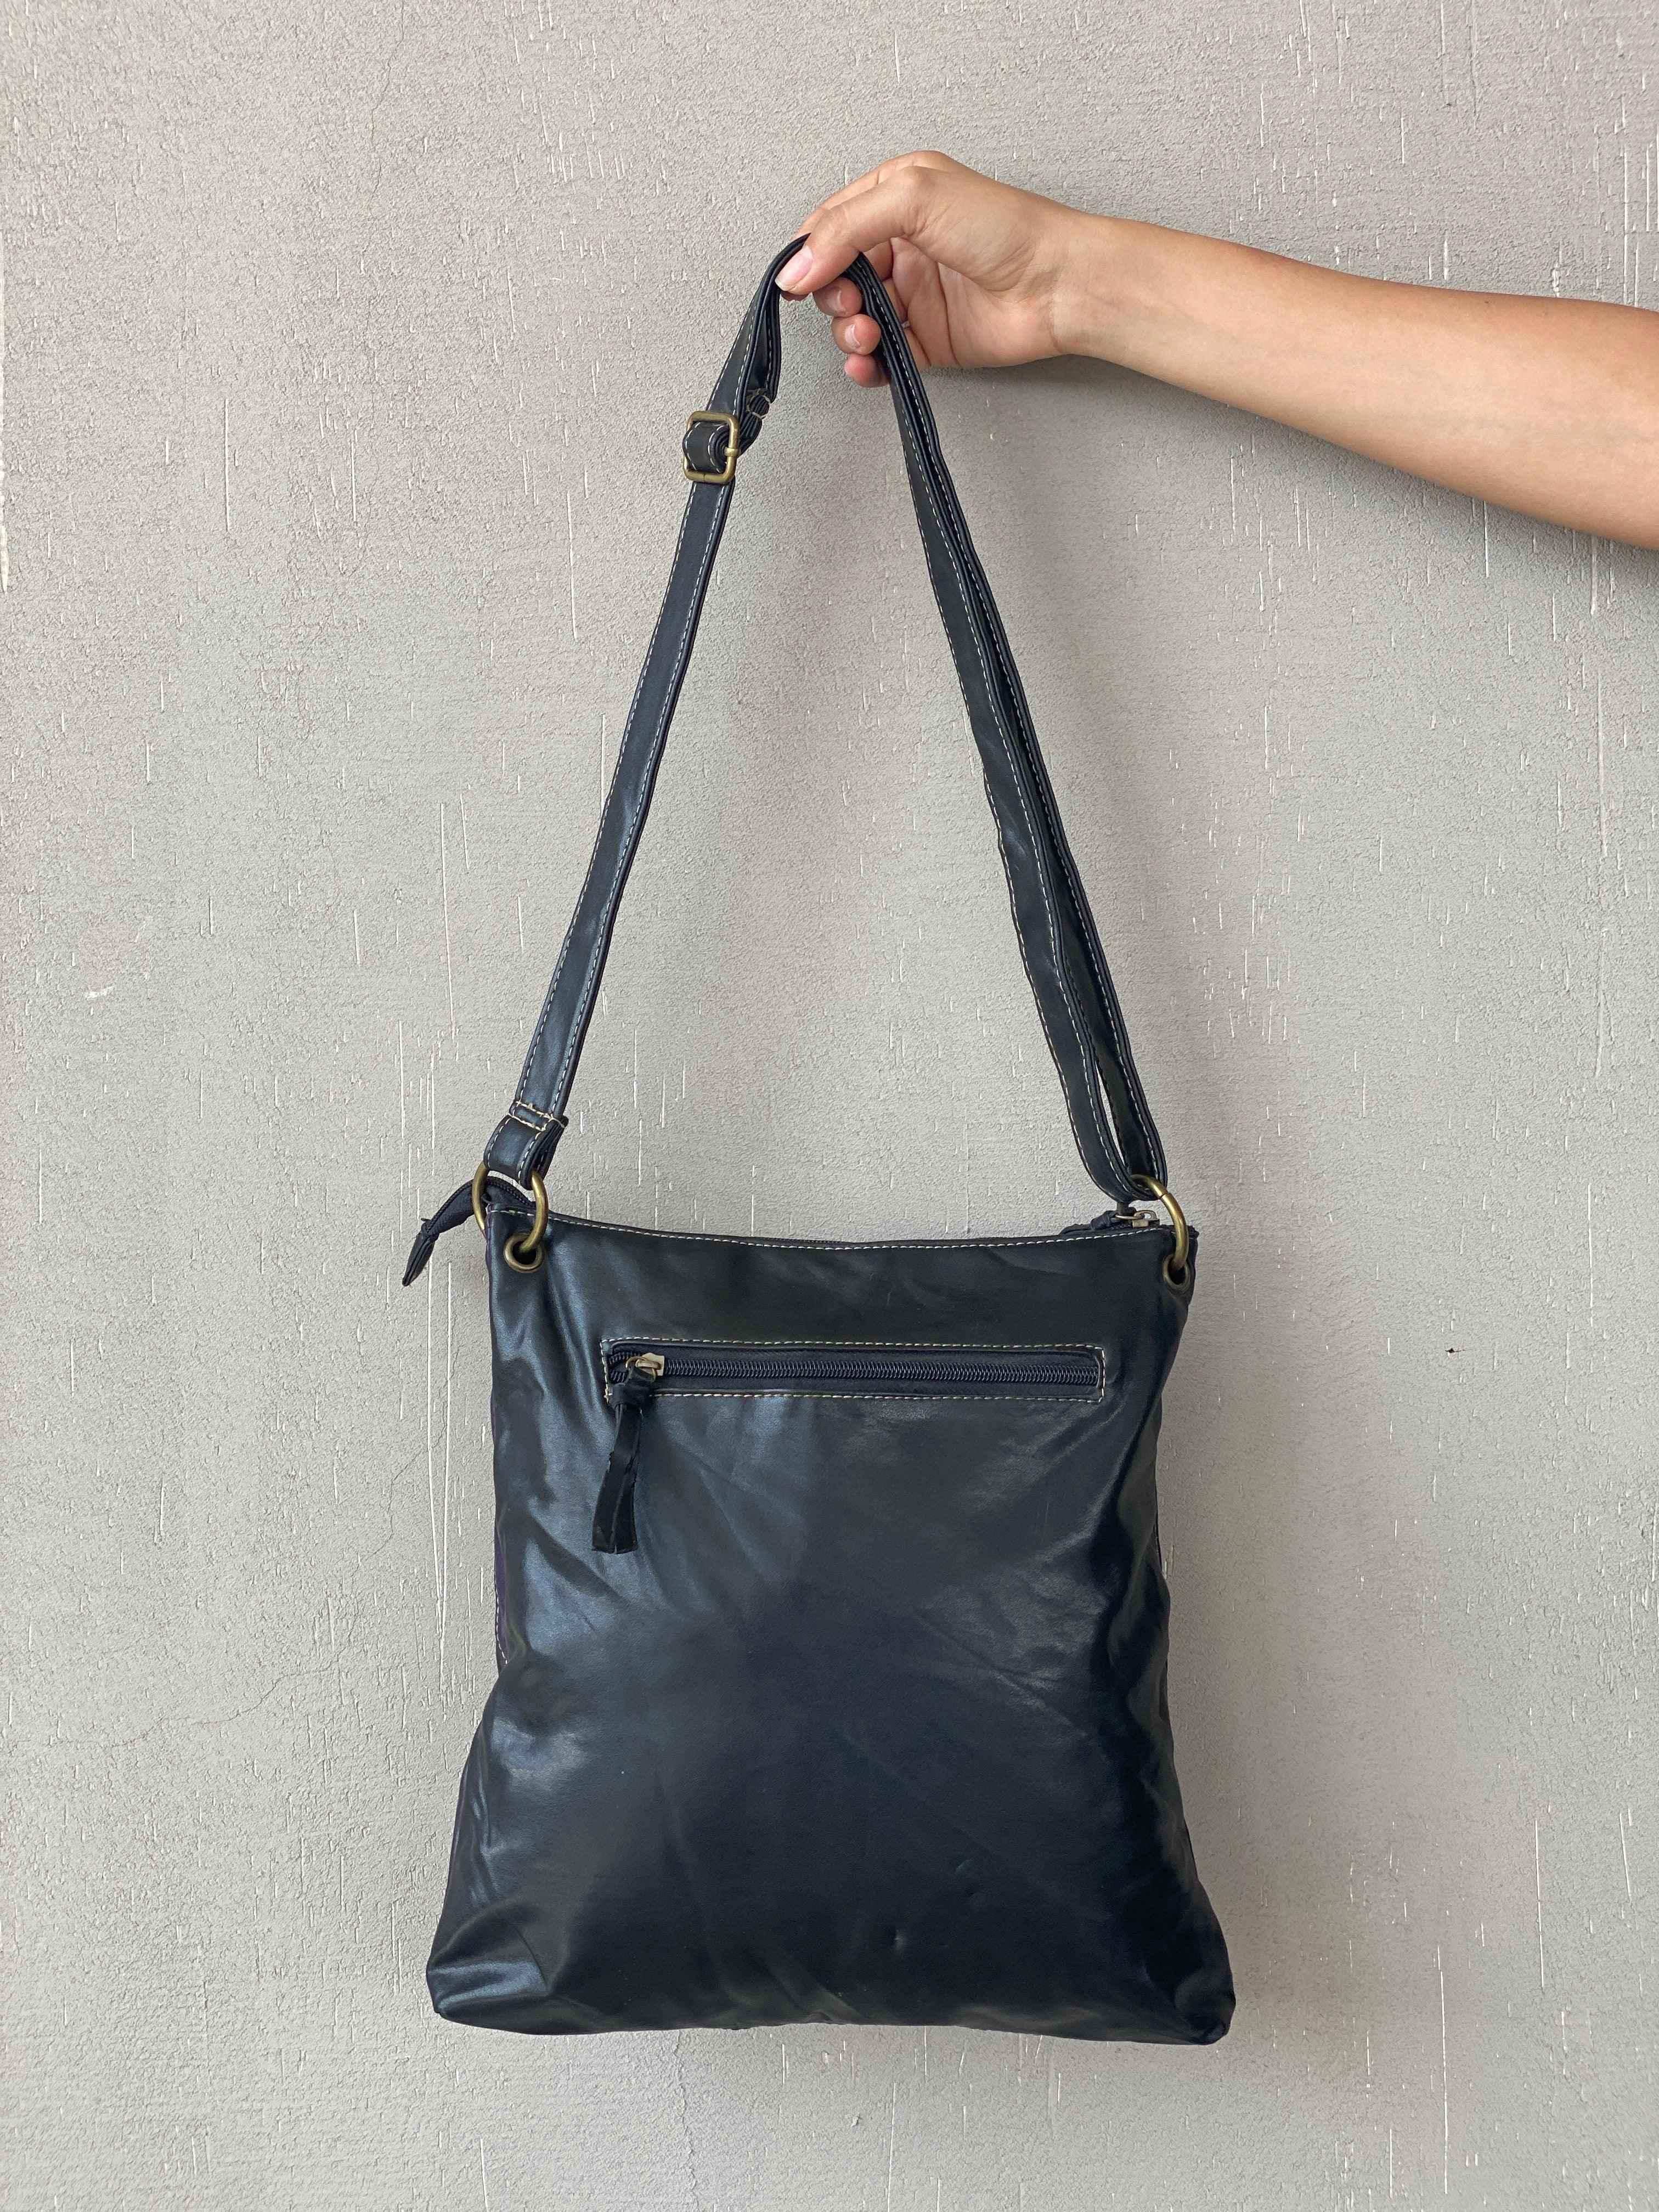 Vintage Leather Patchwork Tote Bag - Balagan Vintage Tote Bag bag, Nine West, shoulder bag